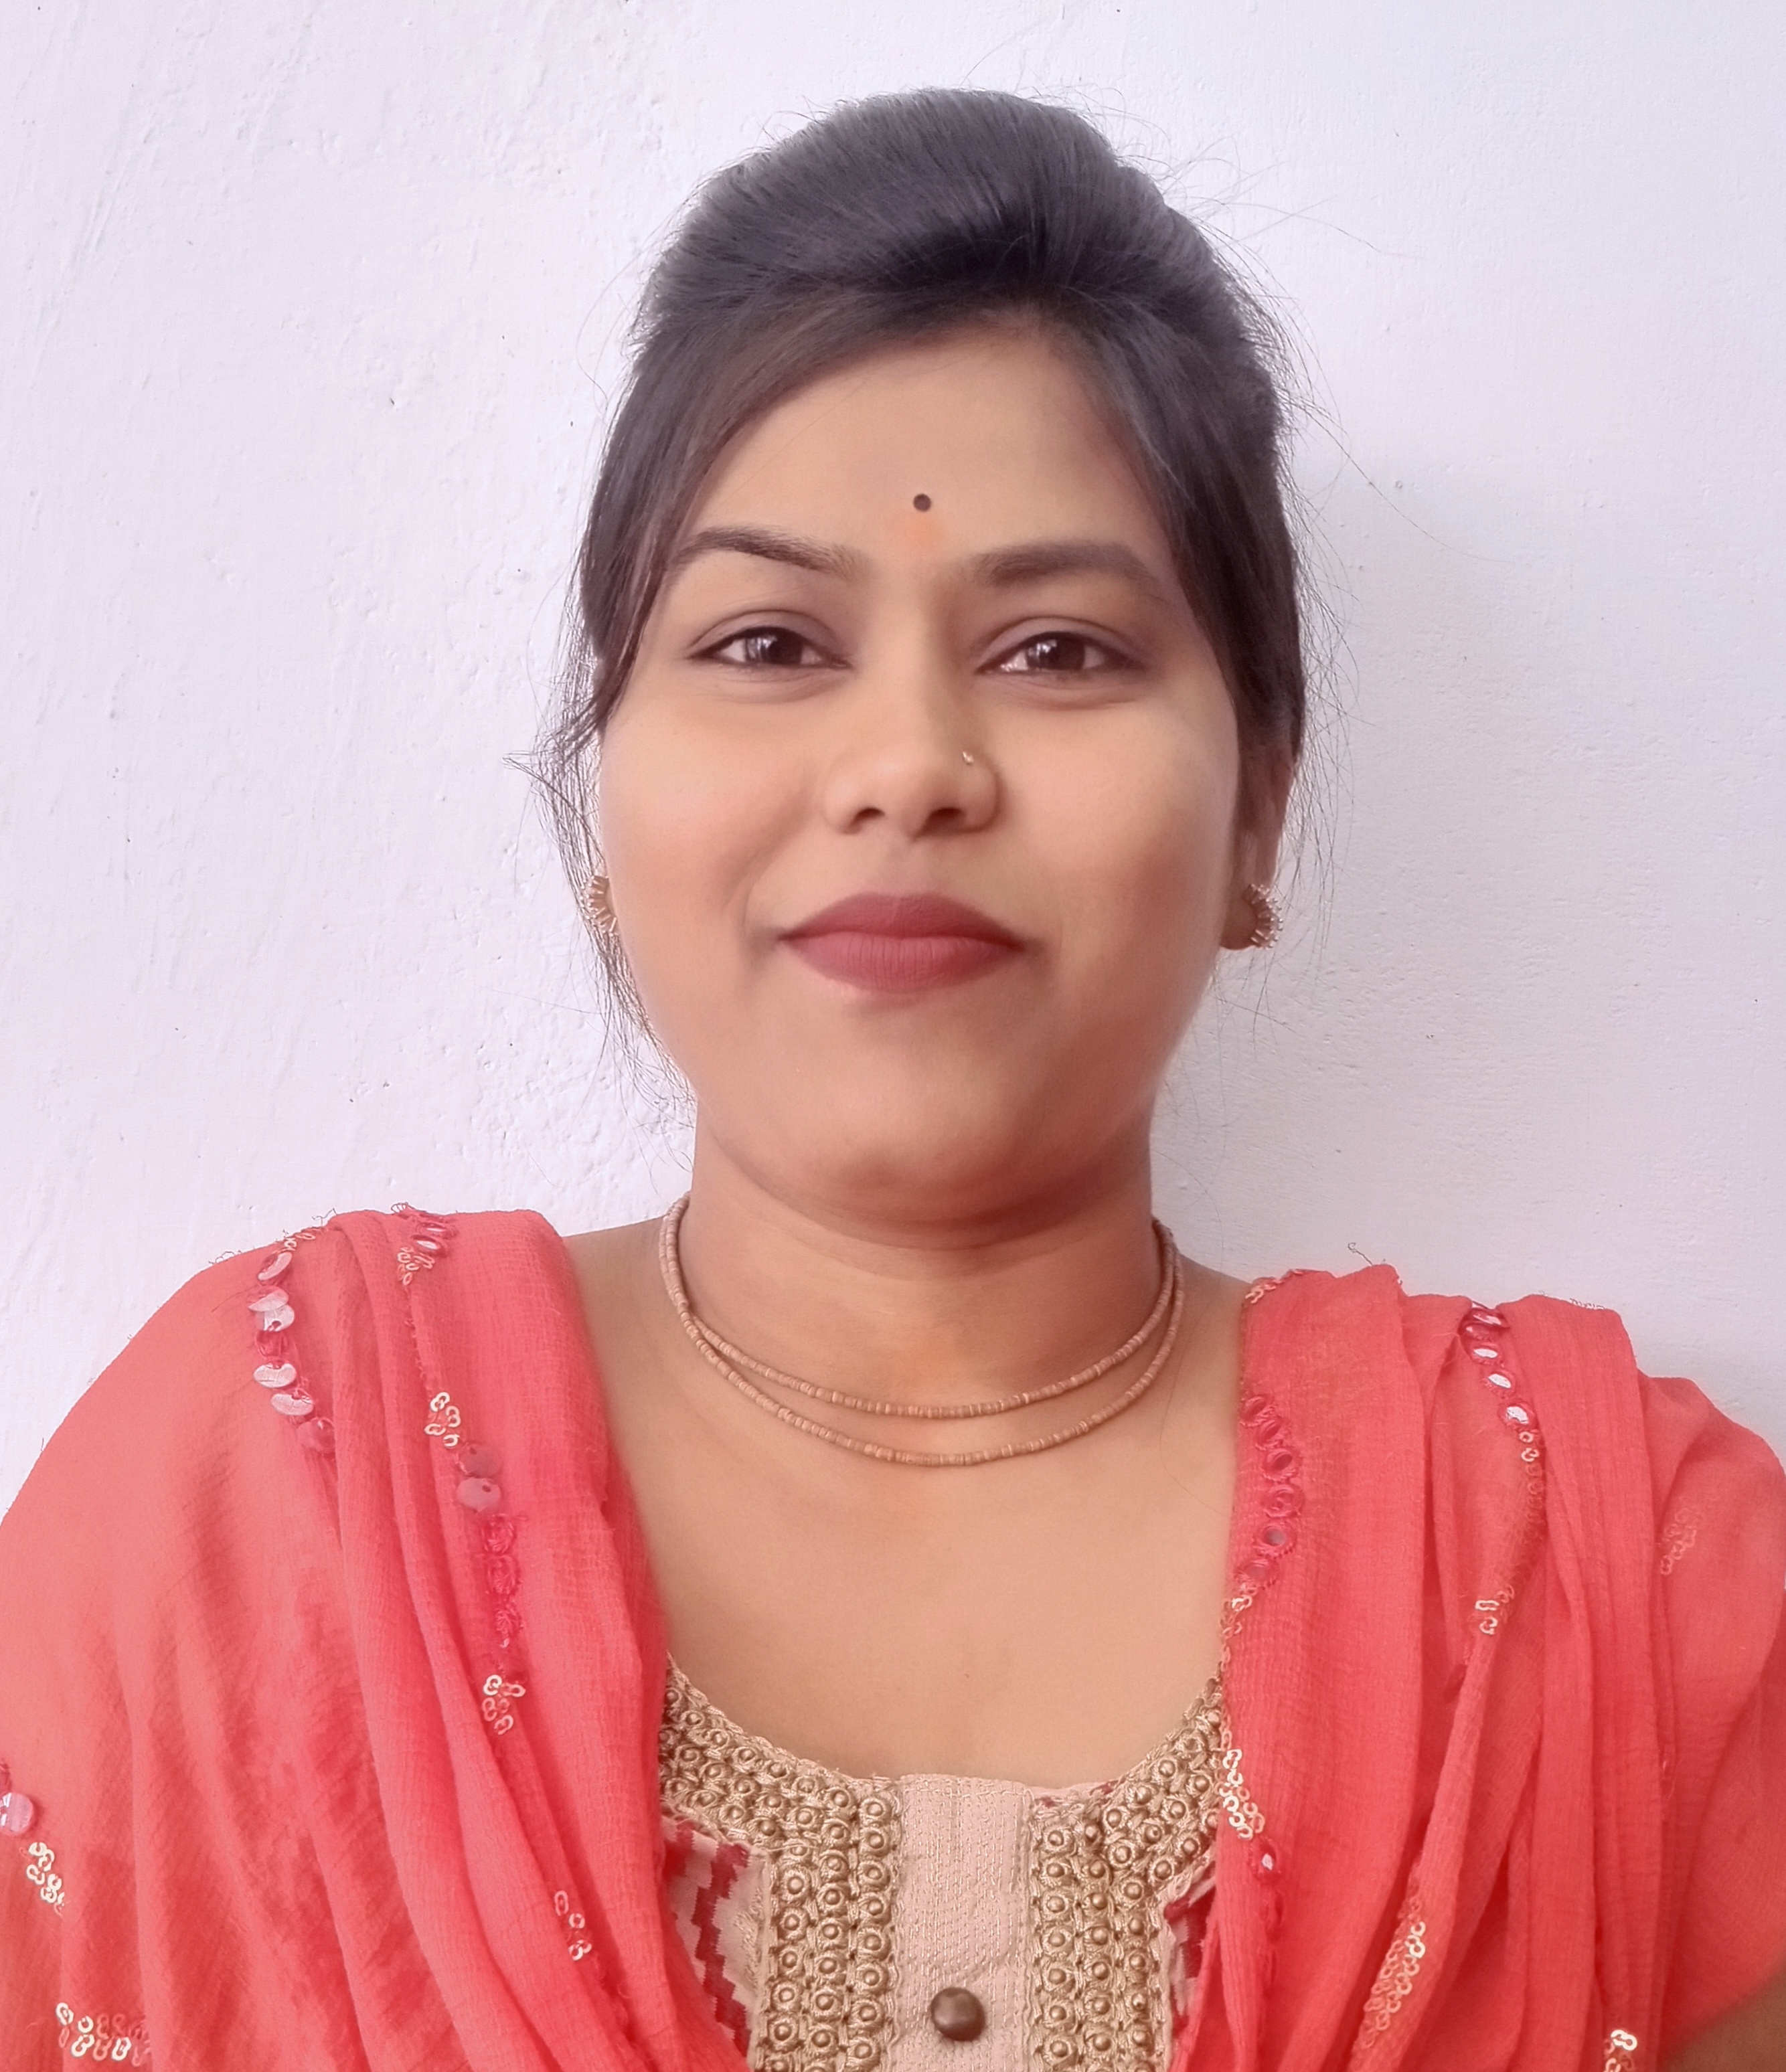 Miss Kiran Chandrakar